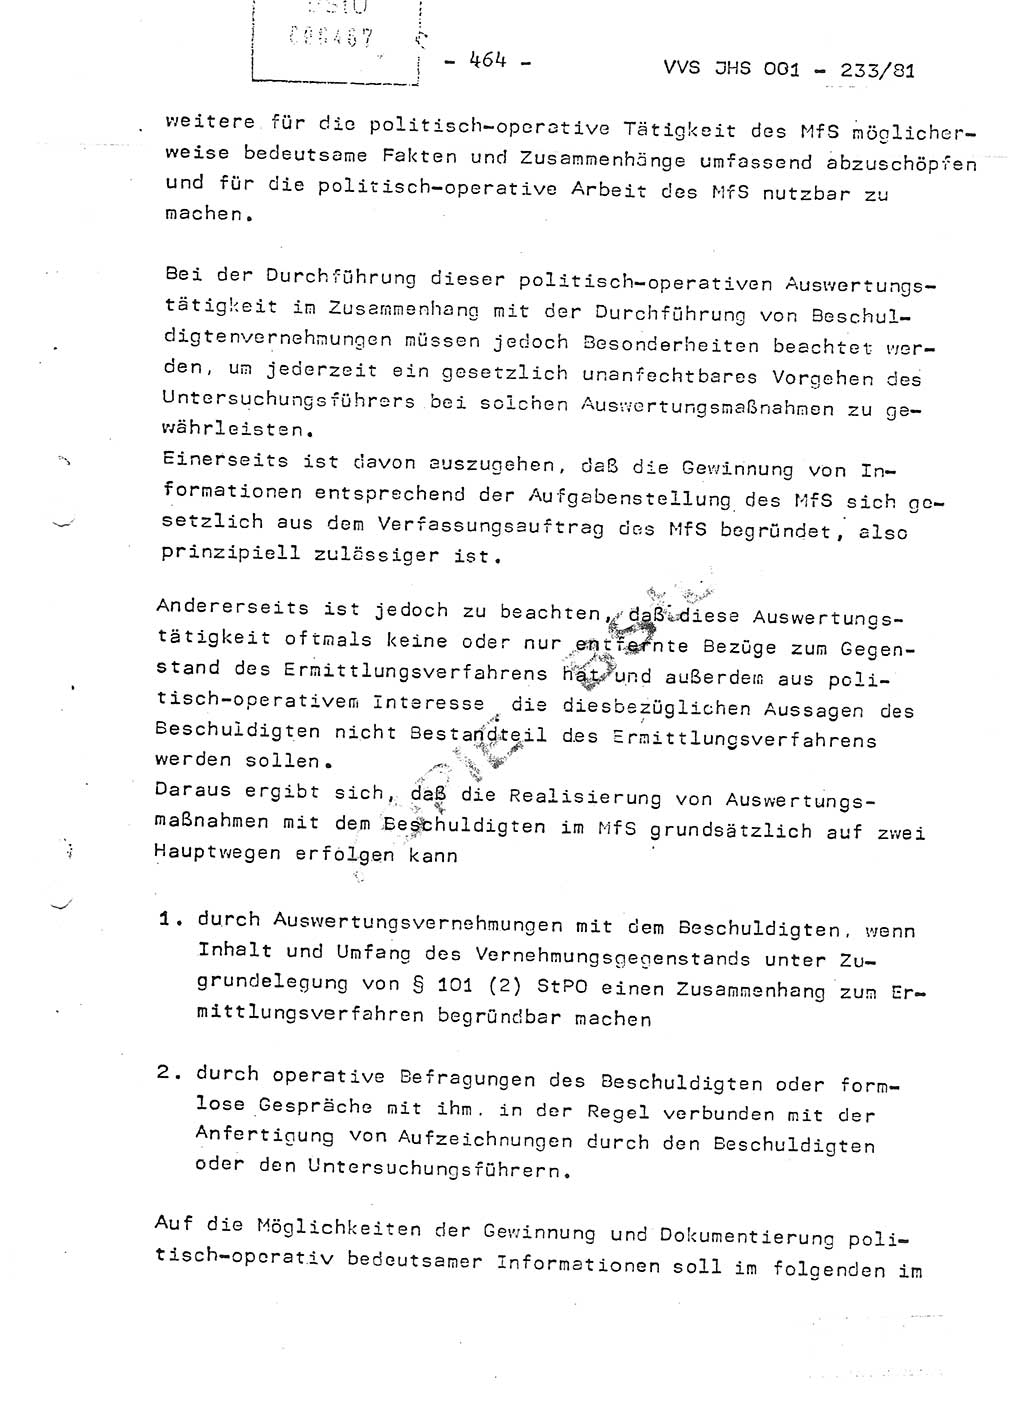 Dissertation Oberstleutnant Horst Zank (JHS), Oberstleutnant Dr. Karl-Heinz Knoblauch (JHS), Oberstleutnant Gustav-Adolf Kowalewski (HA Ⅸ), Oberstleutnant Wolfgang Plötner (HA Ⅸ), Ministerium für Staatssicherheit (MfS) [Deutsche Demokratische Republik (DDR)], Juristische Hochschule (JHS), Vertrauliche Verschlußsache (VVS) o001-233/81, Potsdam 1981, Blatt 464 (Diss. MfS DDR JHS VVS o001-233/81 1981, Bl. 464)